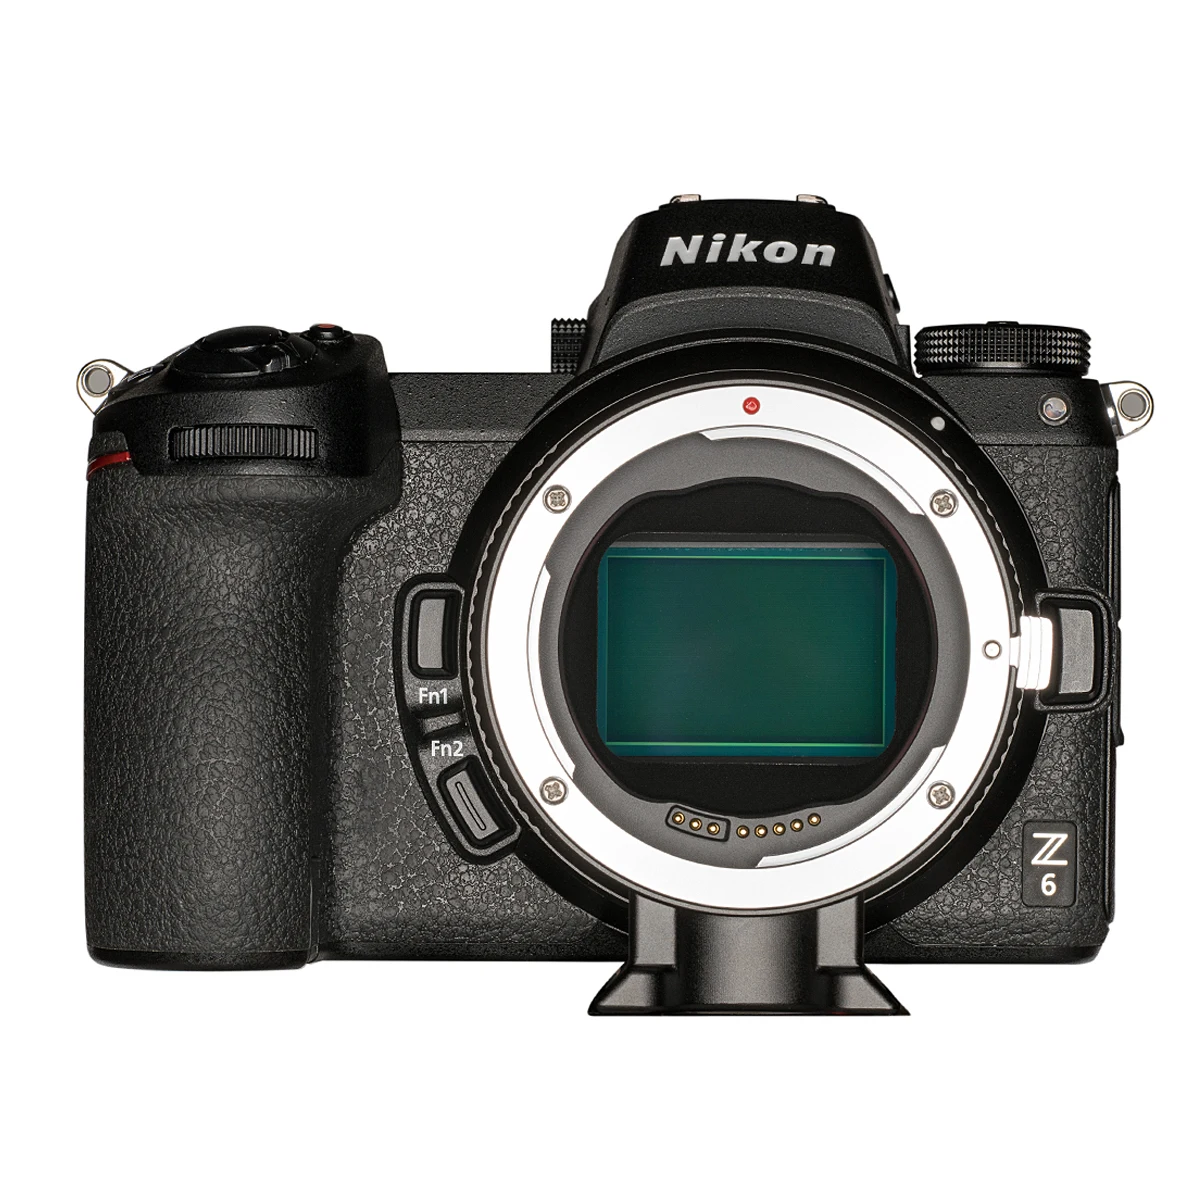 Fringer EF-NZ עדשת מצלמה מתאם טבעת על Canon EF EF-S עדשות לניקון Z המצלמה z6 Z7 Z50 z5 מתאם הר . ' - ' . 3